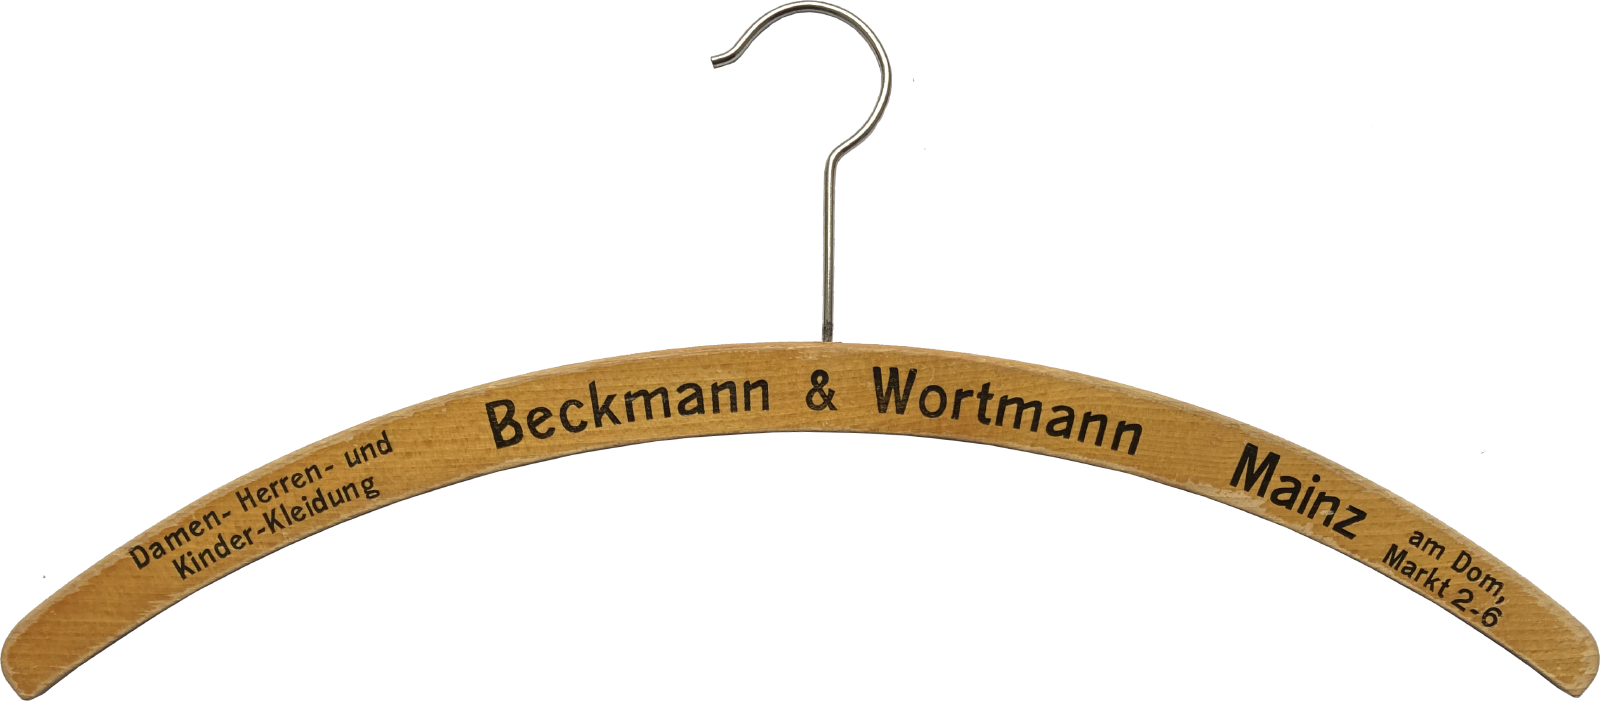 Beckmann & Wortmann